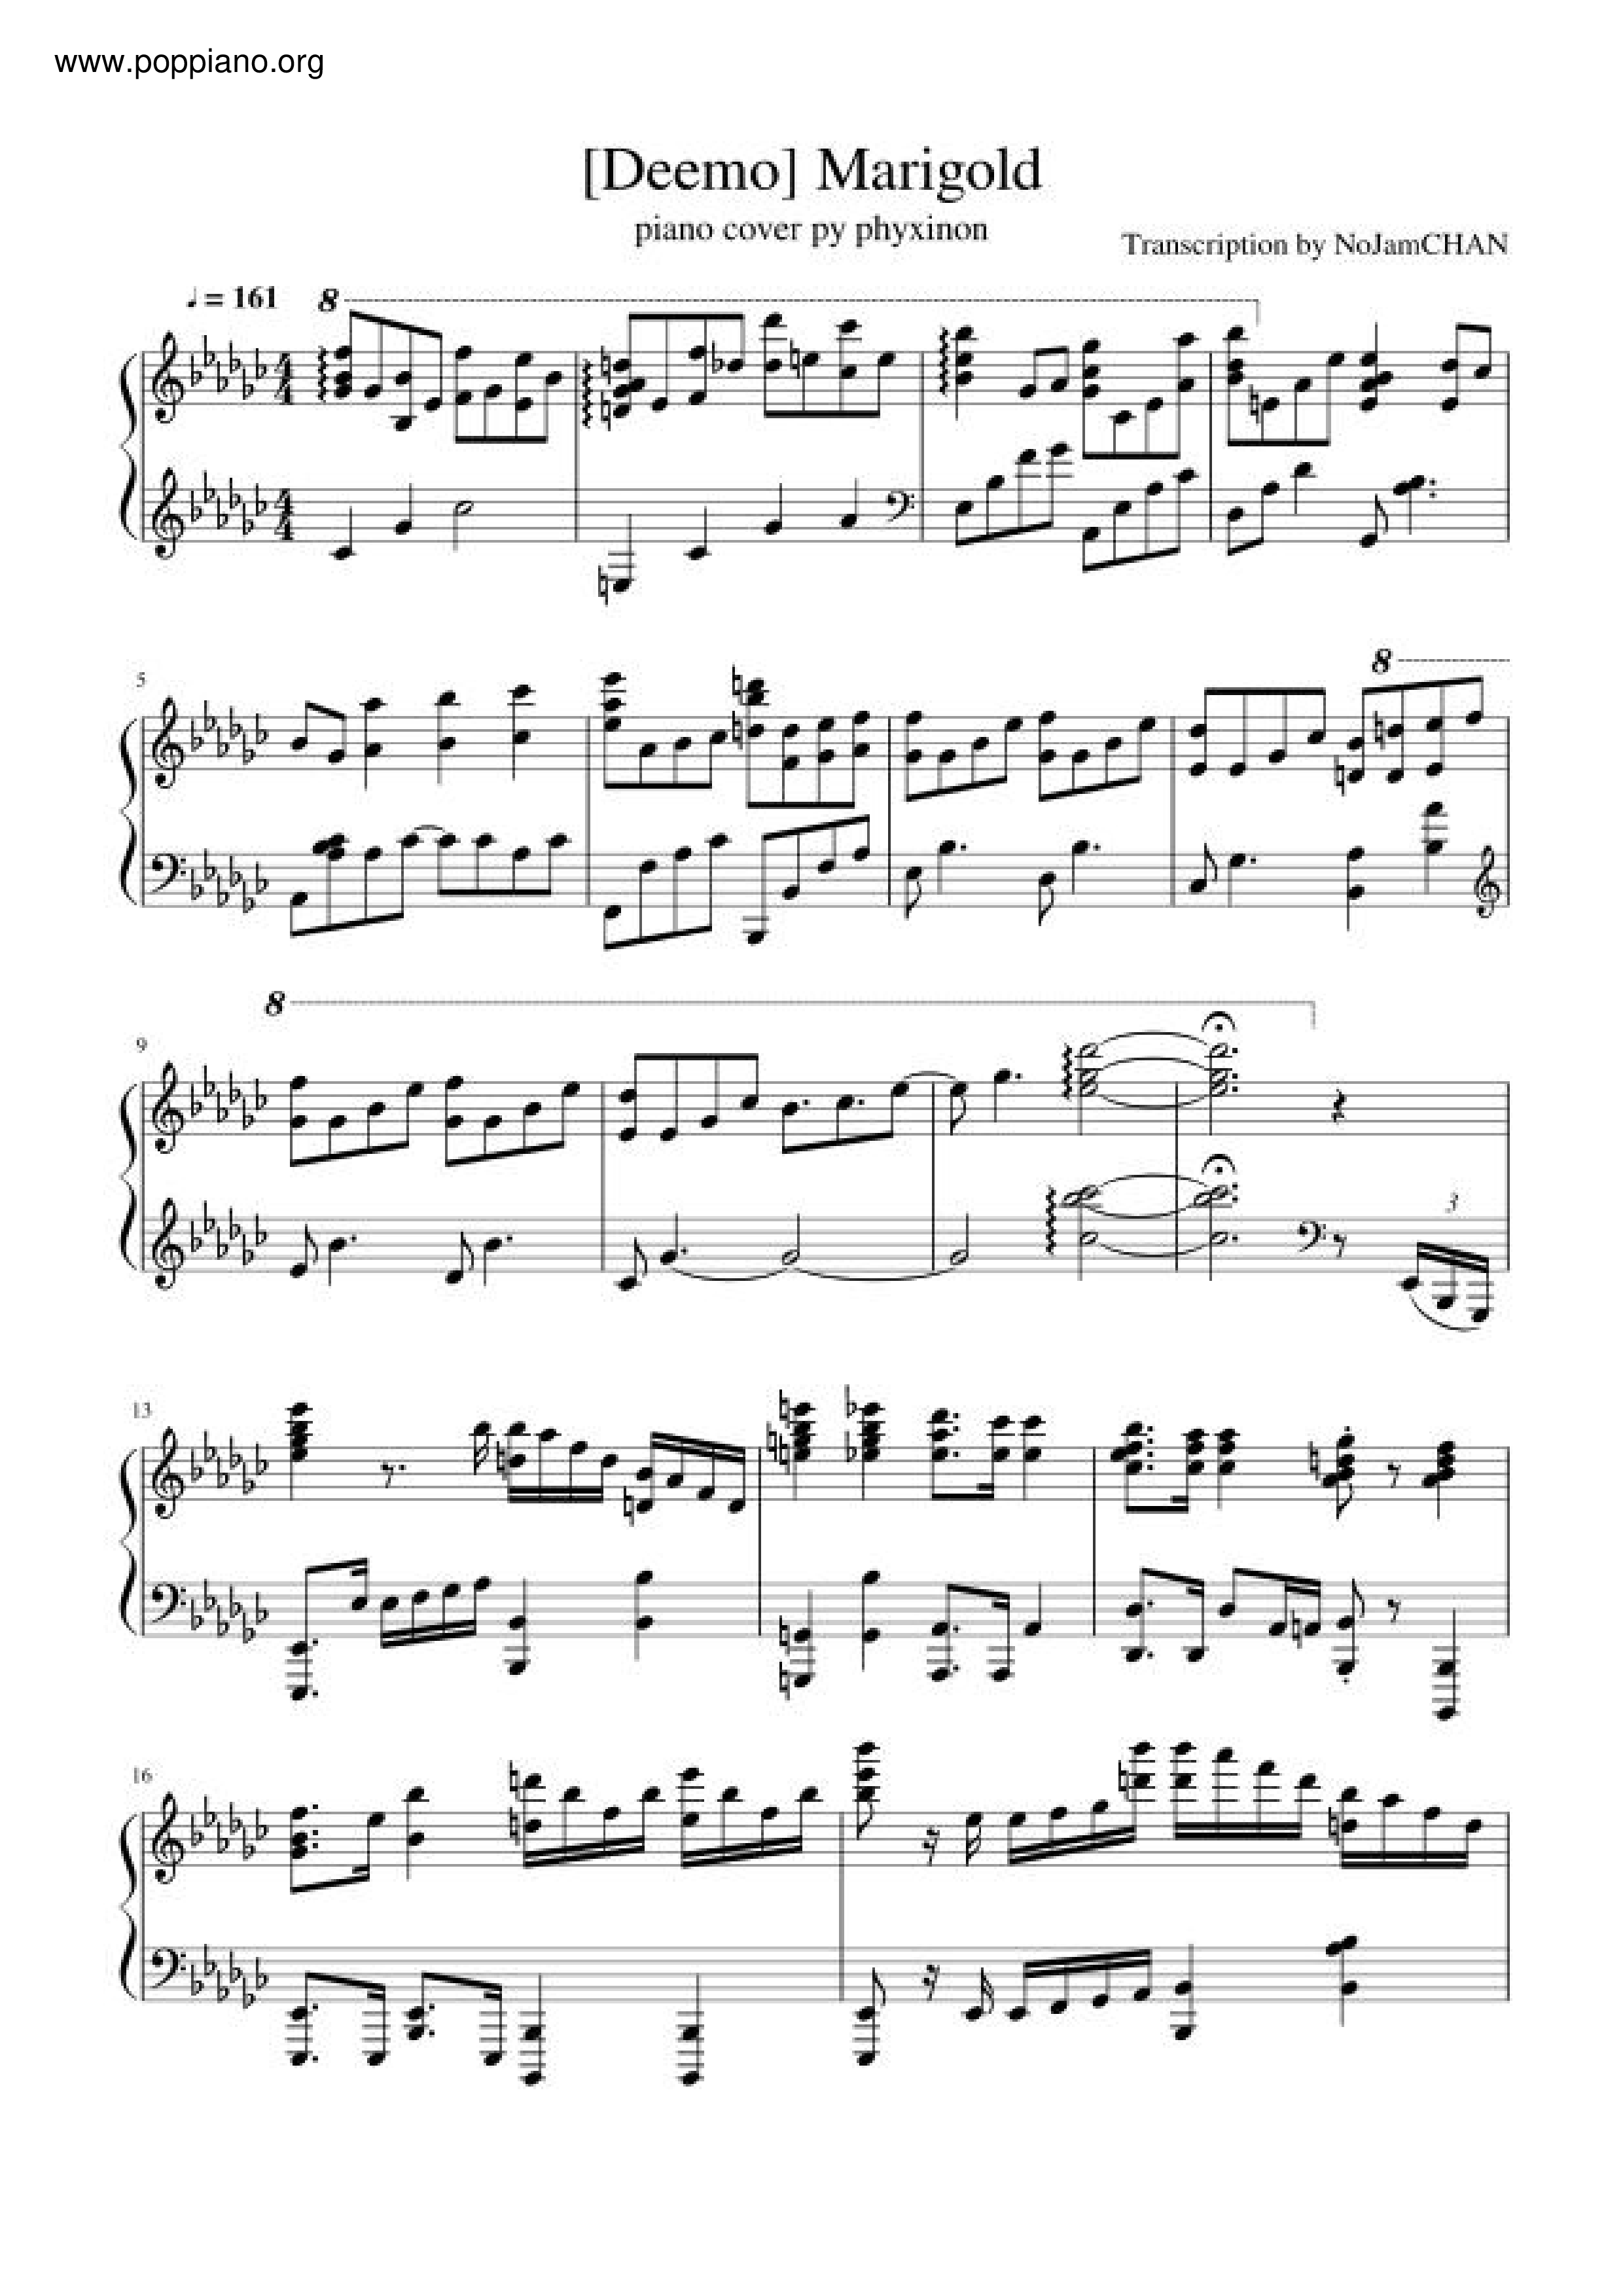 Deemo - Marigold Score